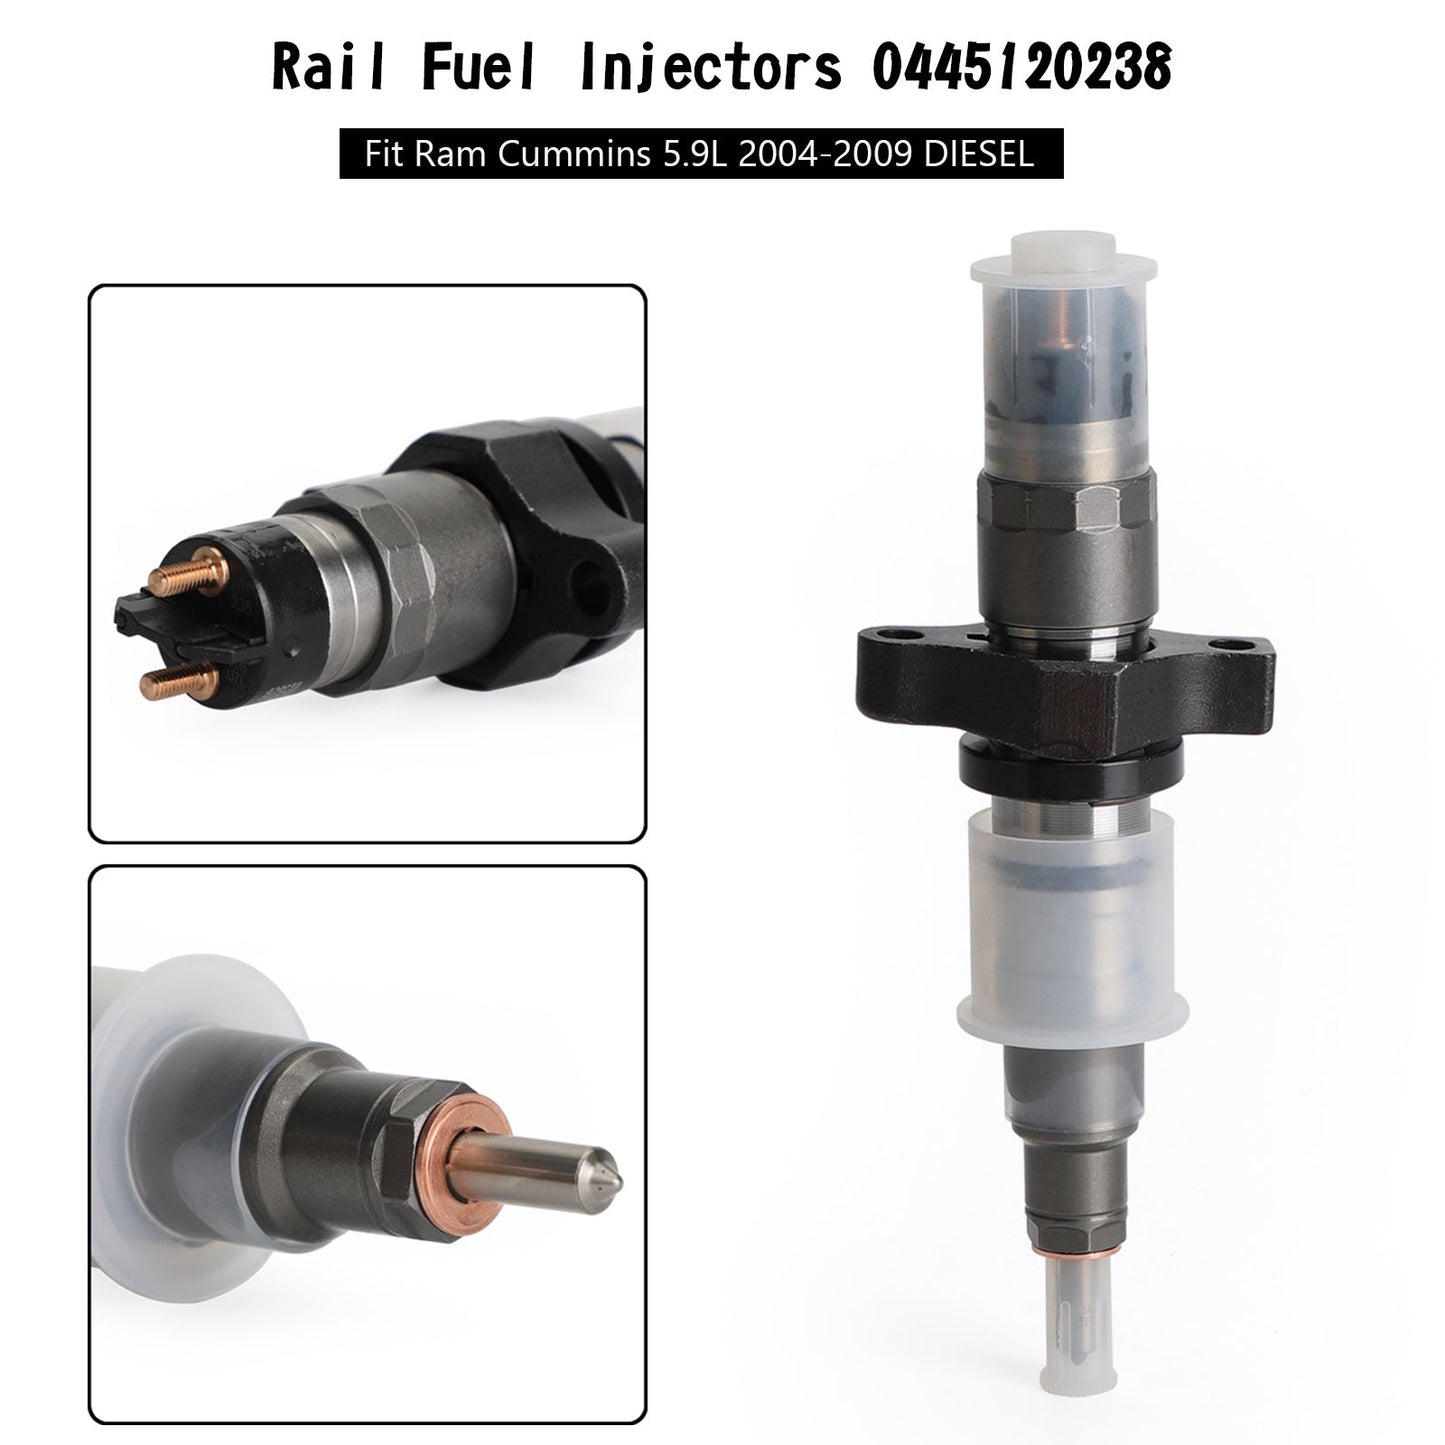 6pcs Rail Fuel Injectors 0445120238 Fit Ram Cummins 5.9L 2004-2009 DIESEL